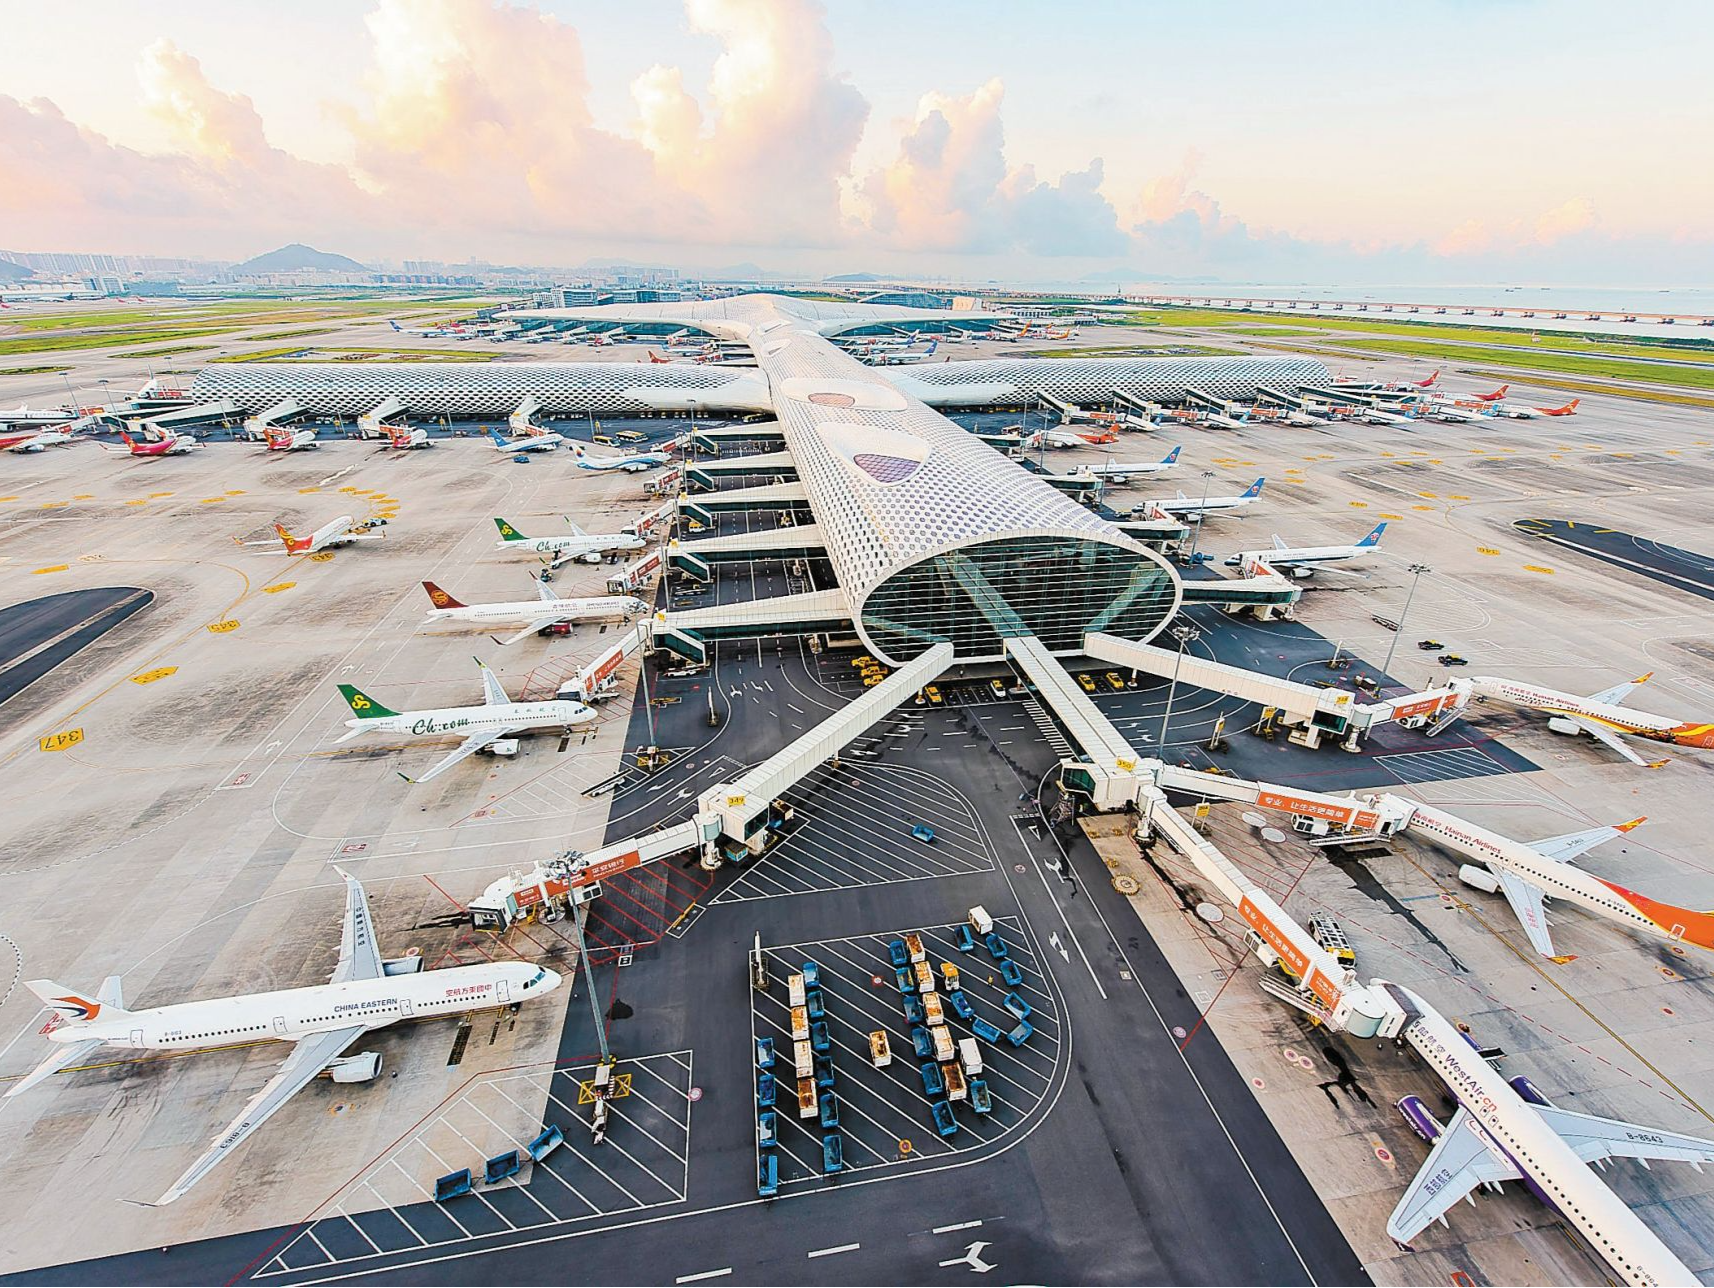 省政协委员支招深圳宝安国际机场国际航空枢纽建设 加快构建与城市发展匹配的国际航线网络